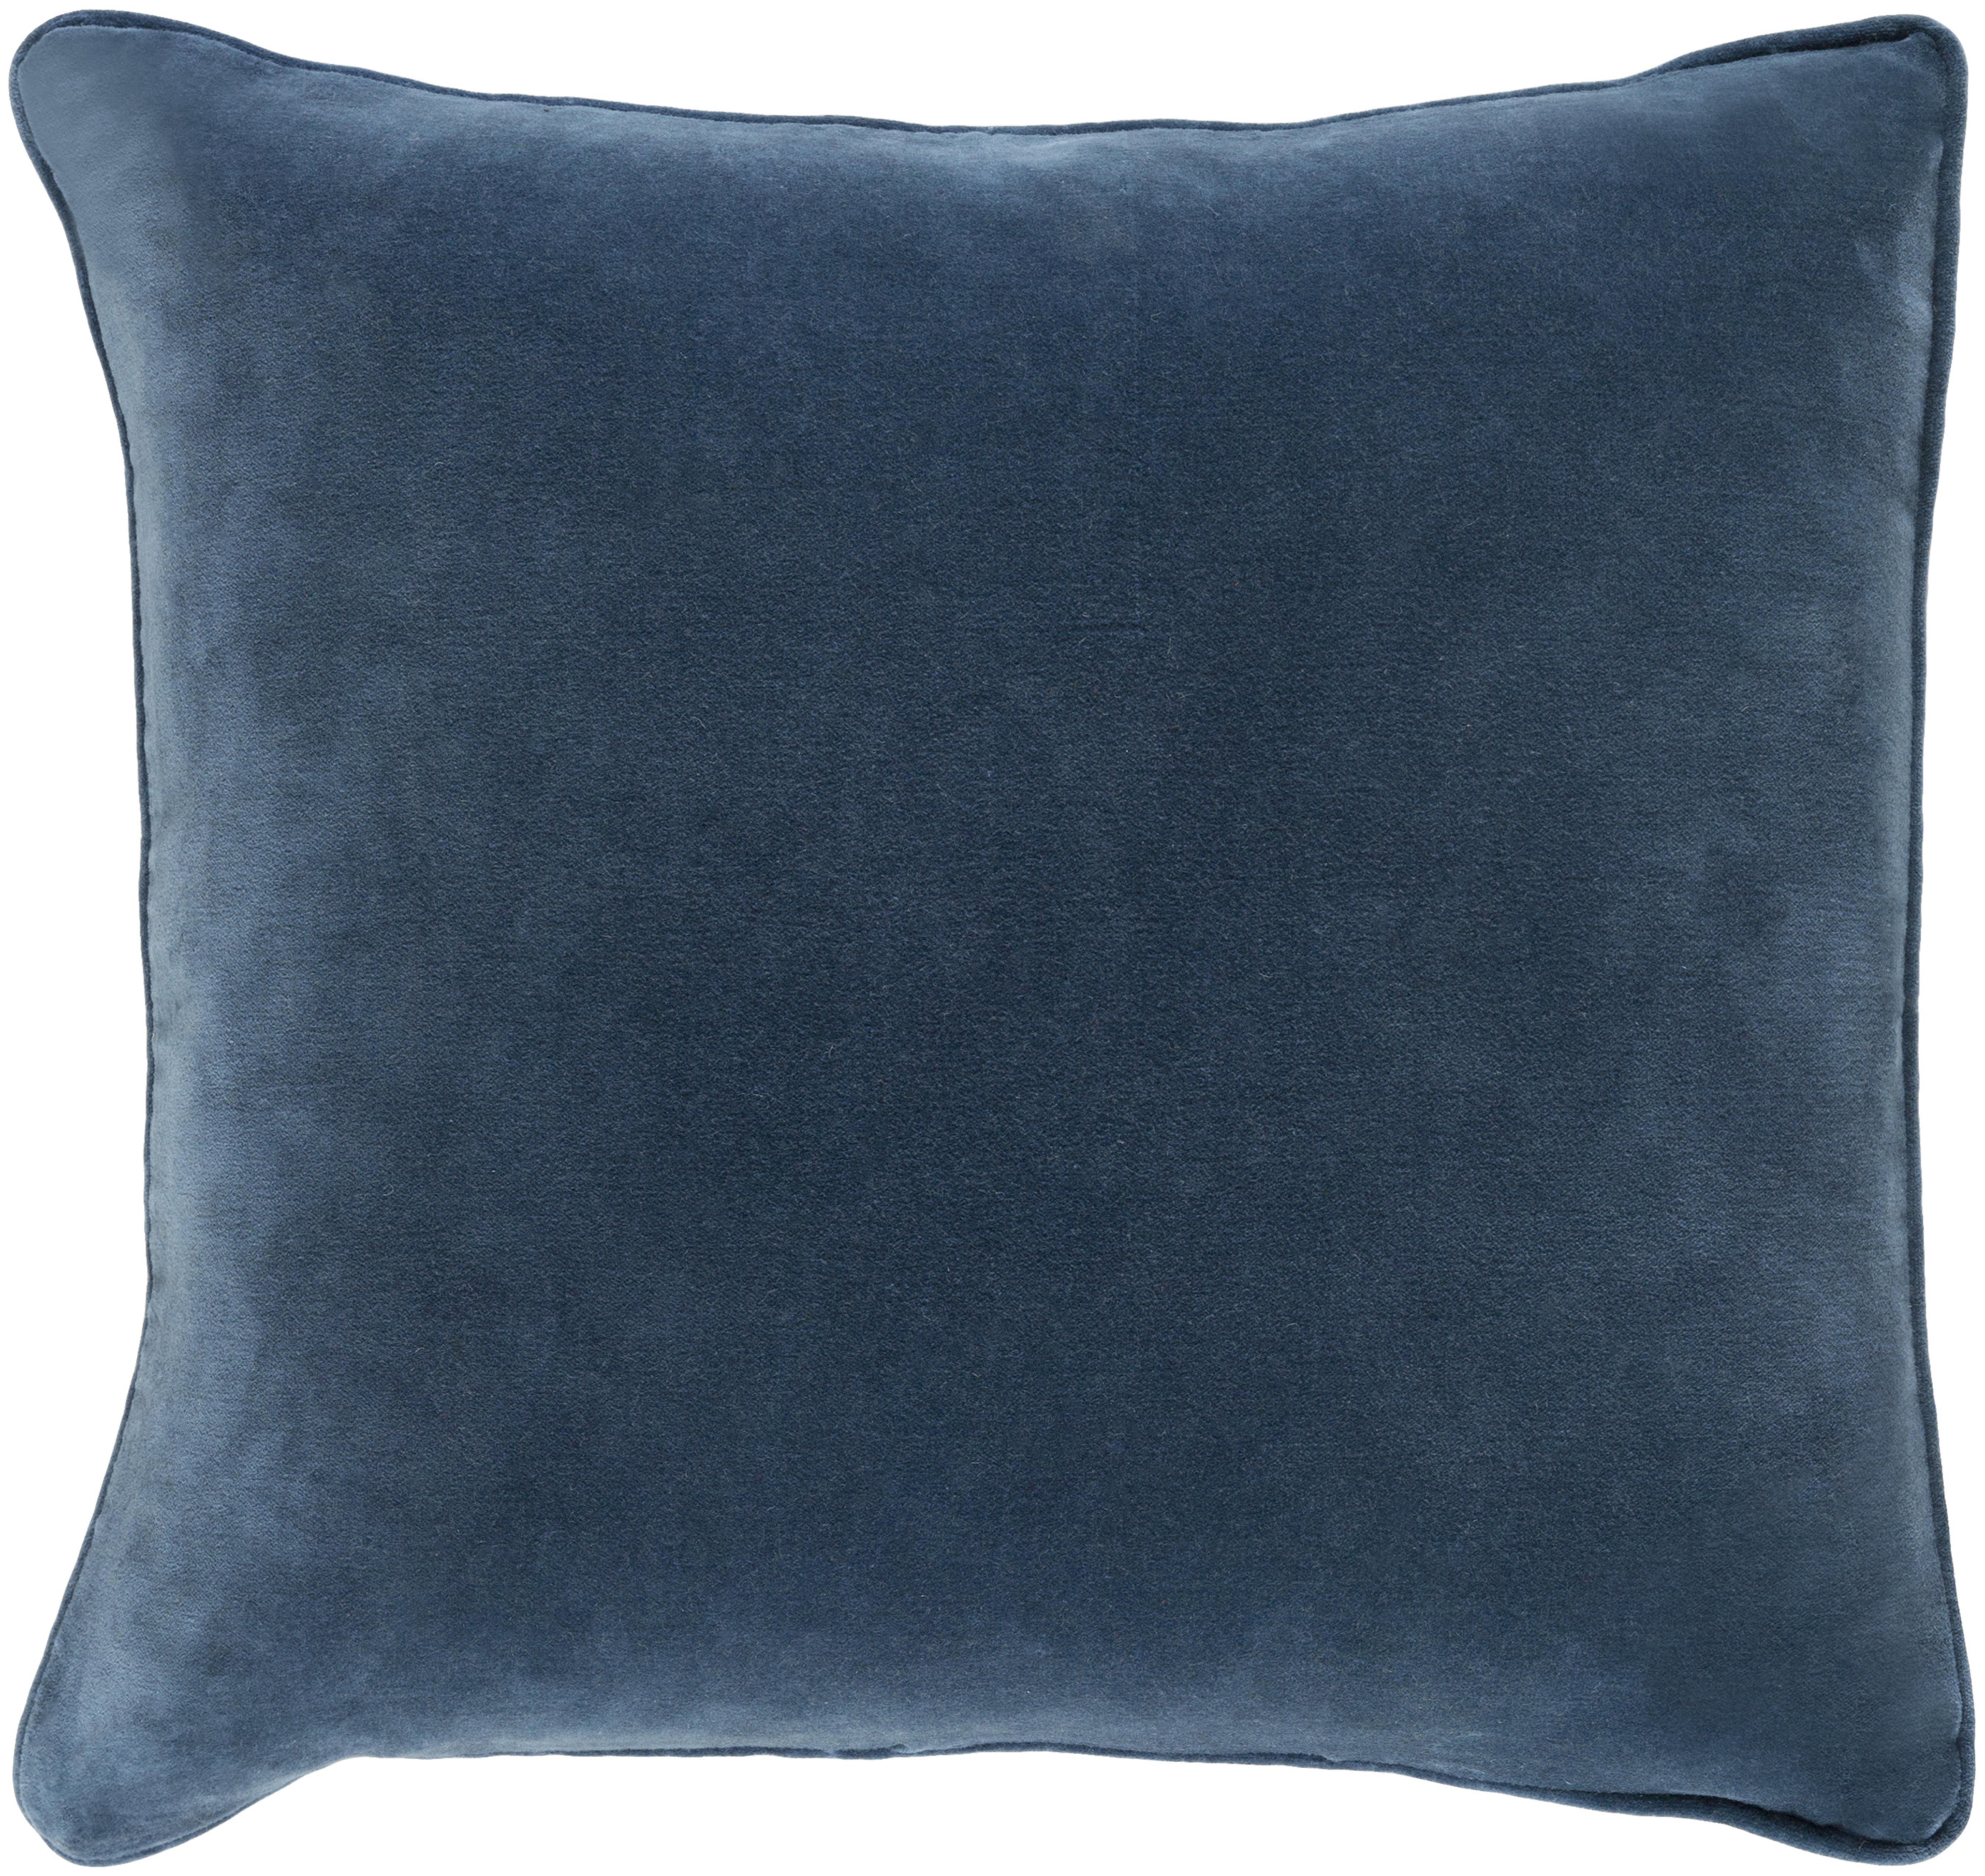 Safflower Pillow, Navy, 18" x 18" - Neva Home